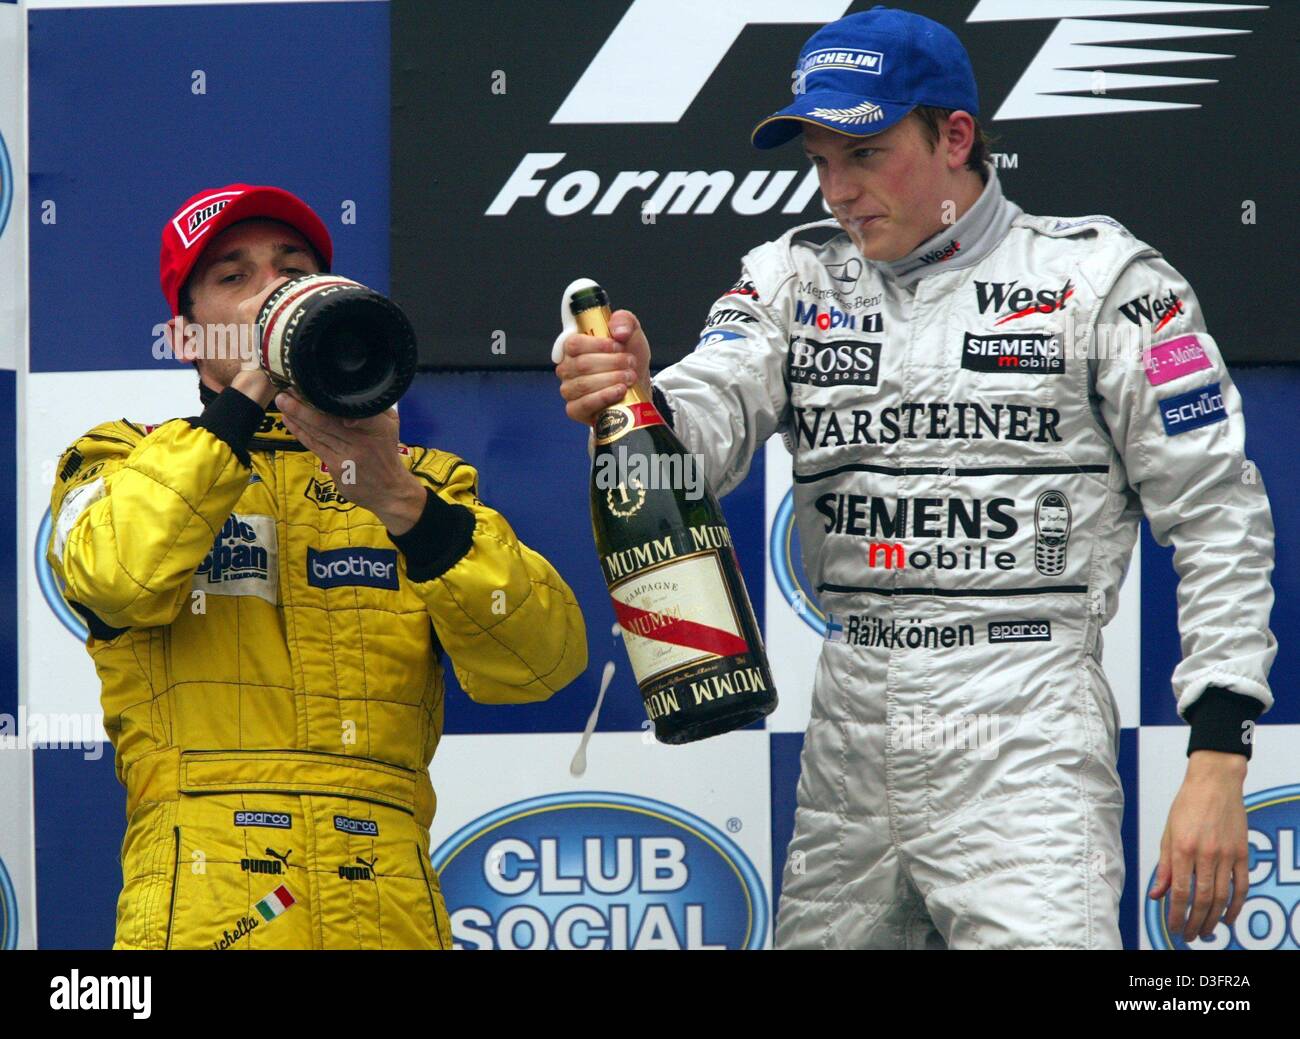 (Dpa) - Formel 1-Piloten Kimi Raeikkoenen (R) aus Finnland (Team McLaren-Mercedes) und Giancarlo Fisichella (Jordan-Team) Italien Drink Flaschen Champagner nach dem Gewinn des Grand Prix von Brasilien auf der Rennstrecke von Interlagos in Sao Paulo, Brasilien, 6. April 2003. Dann wurde Raeikkoenen den Gewinner des Grand Prix von Brasilien erklärt, nachdem das Rennen in Runde 55 wegen der gestoppt wurde Stockfoto